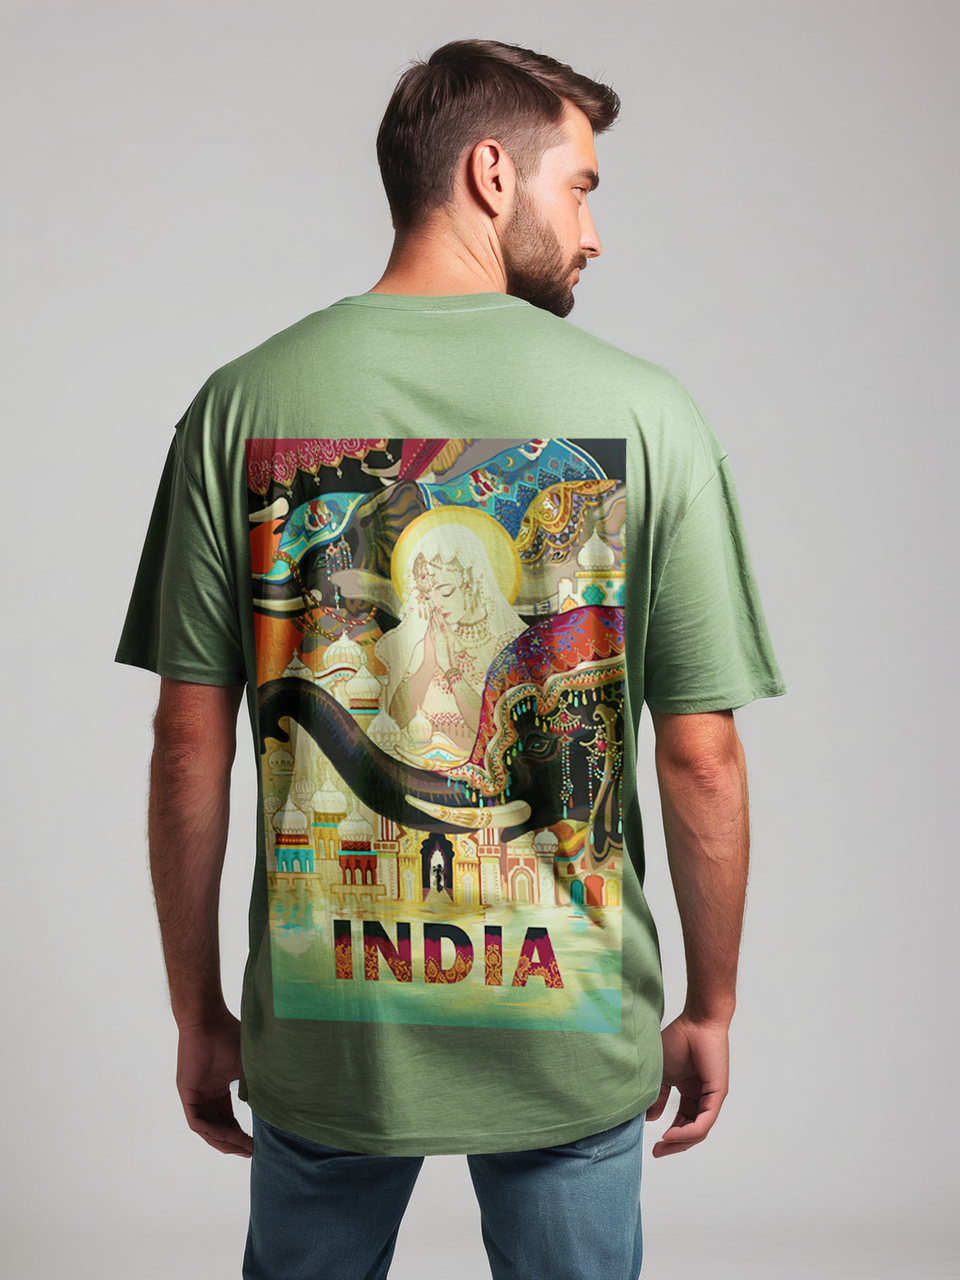 India oversize T-shirt, back side